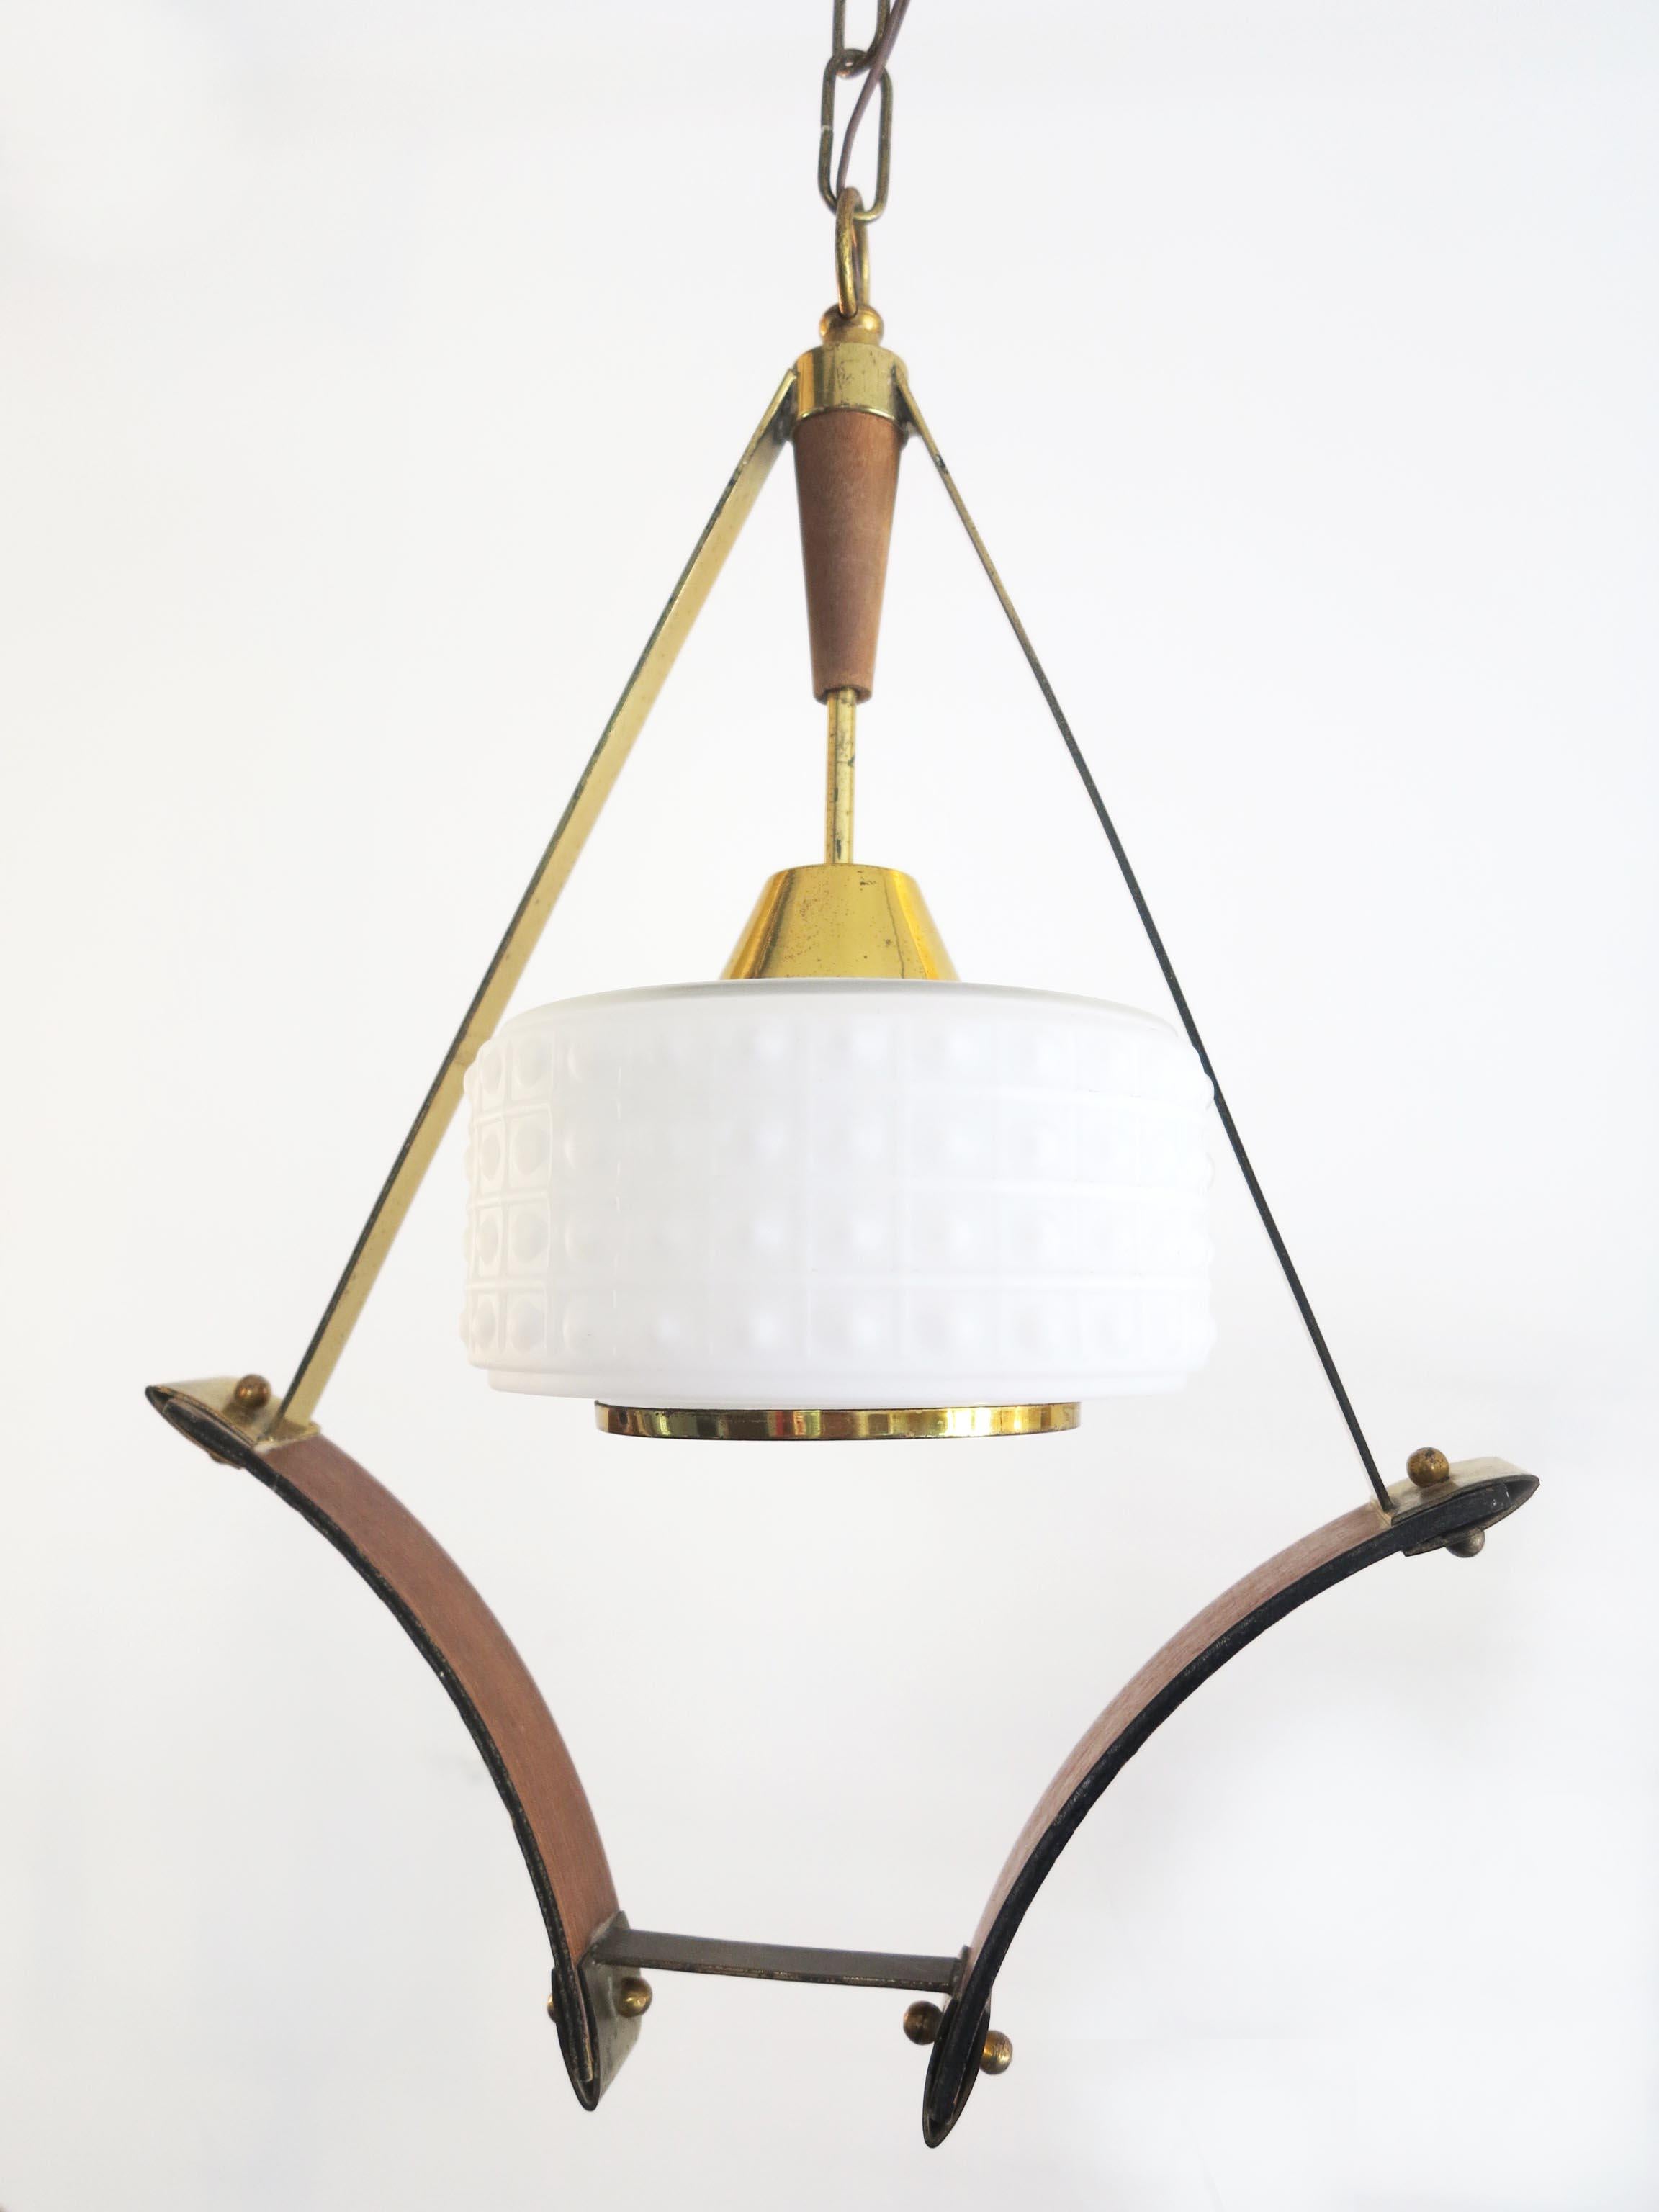 Italian Scandinavian Pendant or Ceiling Lamp in Teak Wood Opaline Glass & Brass, 1950s For Sale